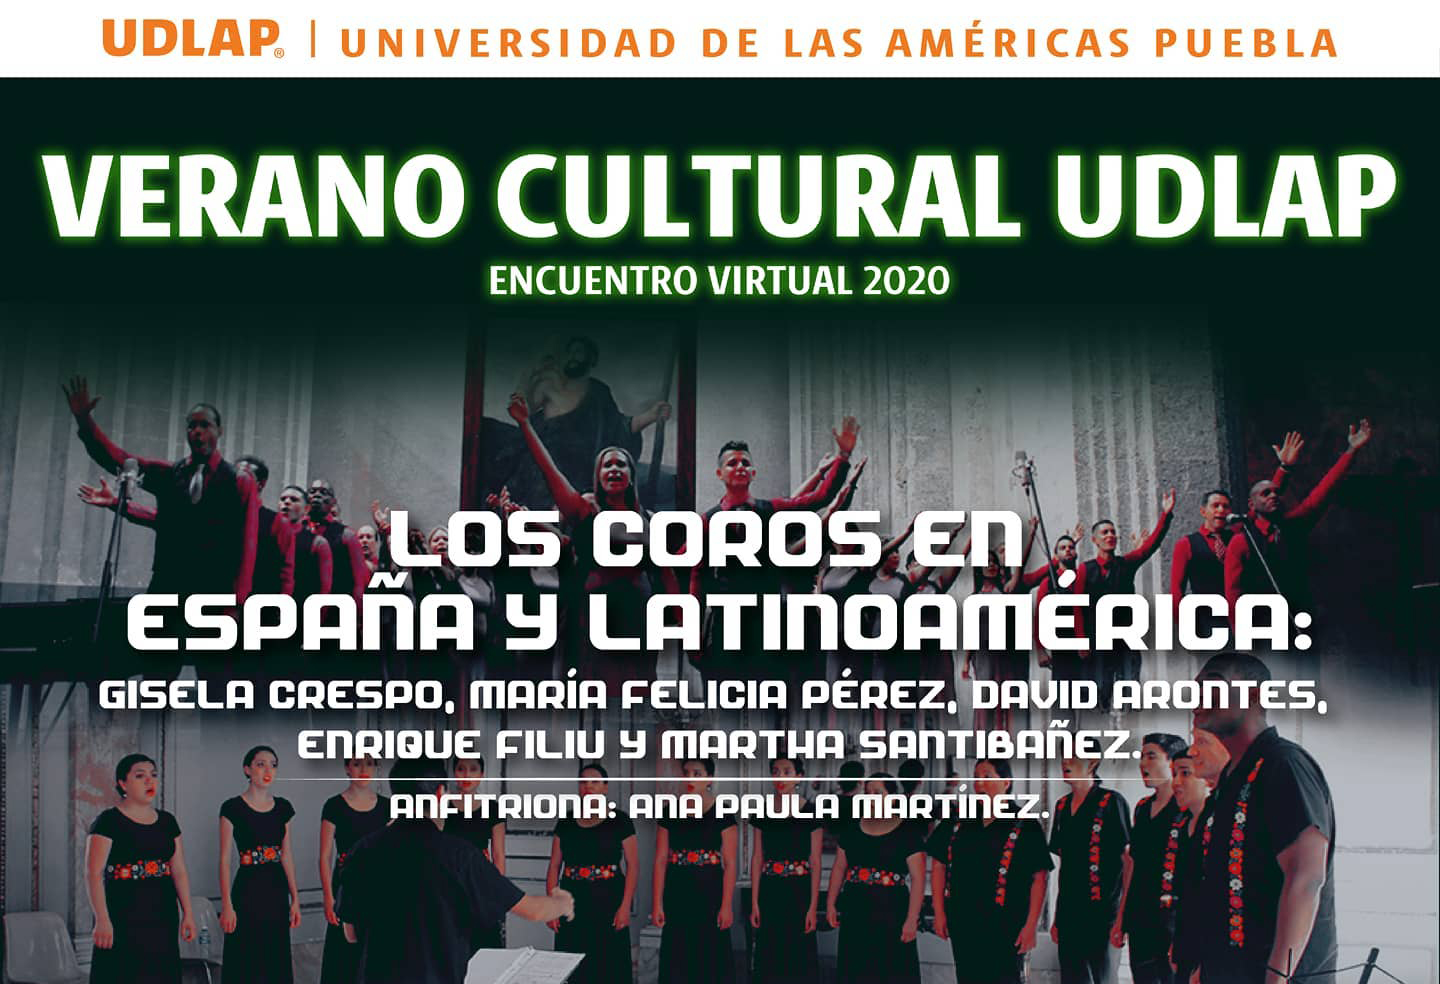 Verano Cultural UDLAP reúne a grandes directores corales de México, España y Cuba